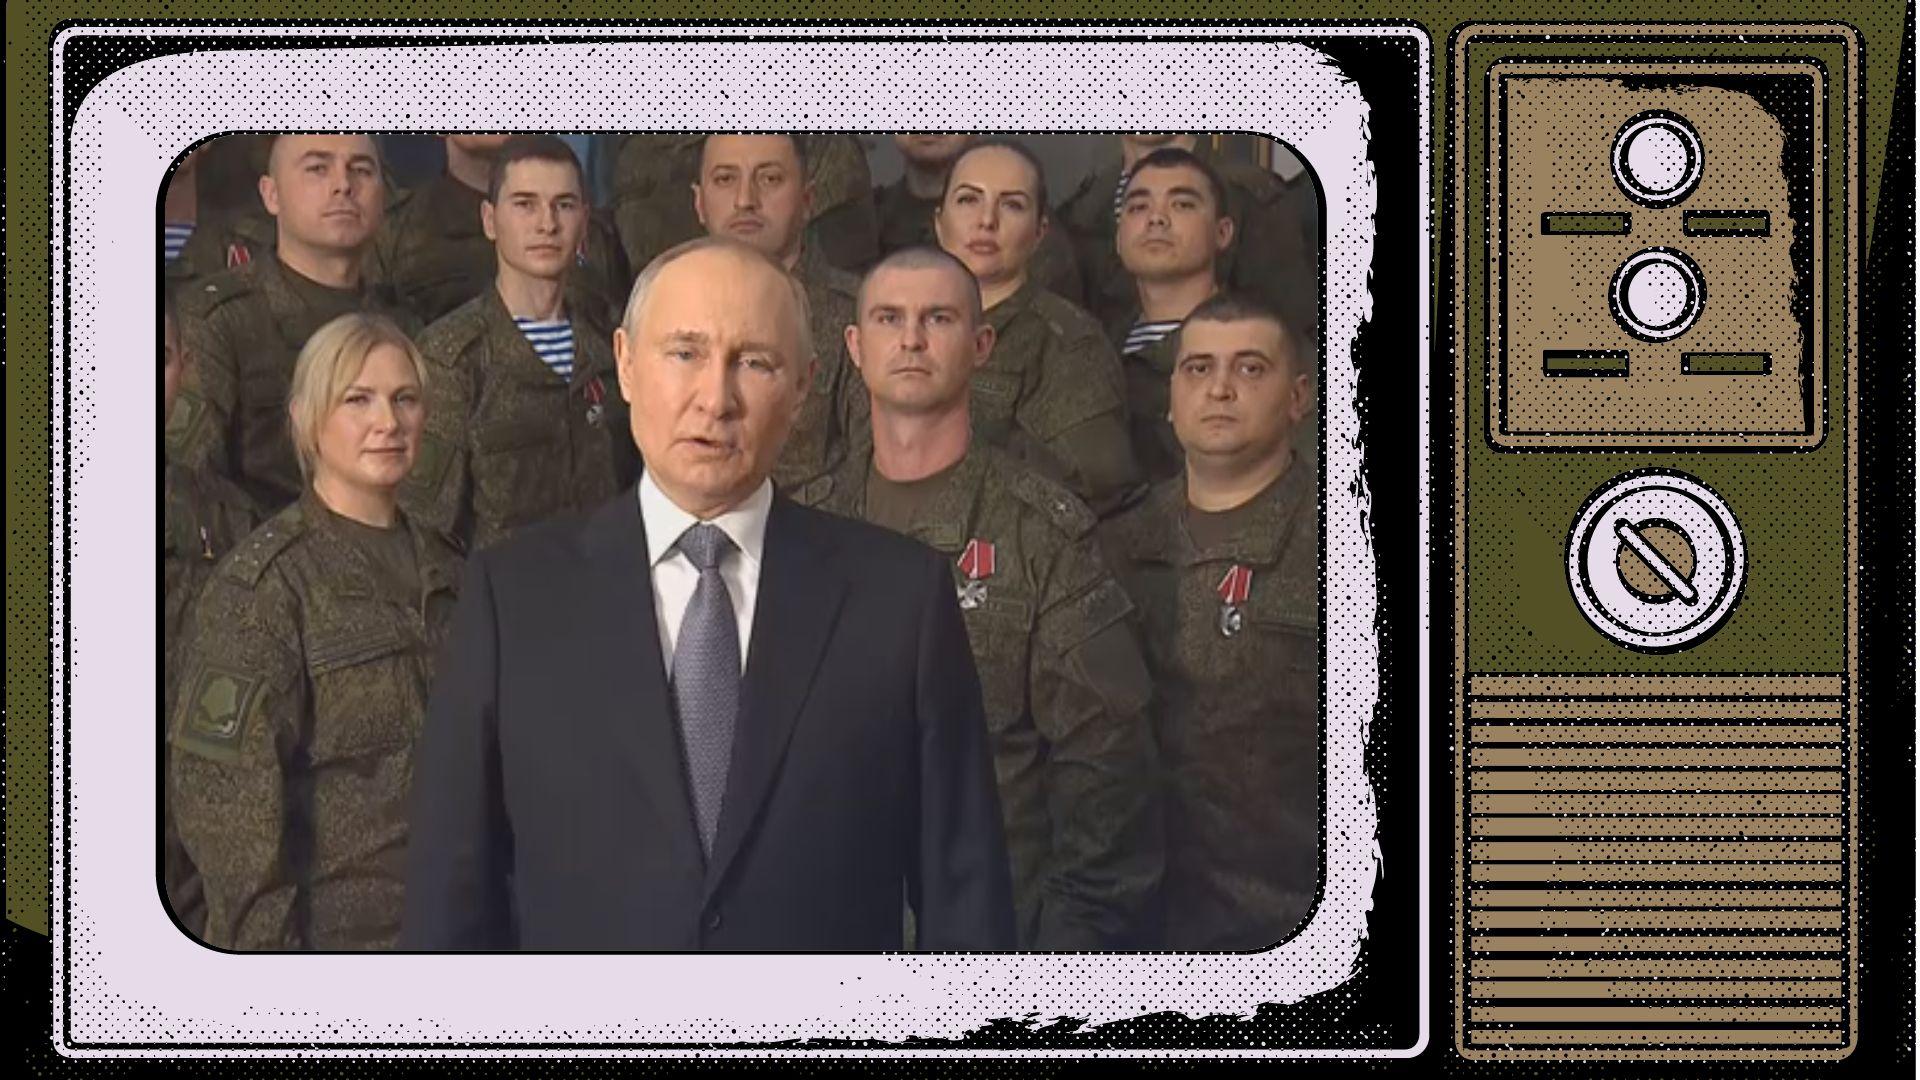 Grafika: Na ekranie starego telewizora umieszczony screen z orędzia Putina, który przemawia na tle ludzi w mundurach